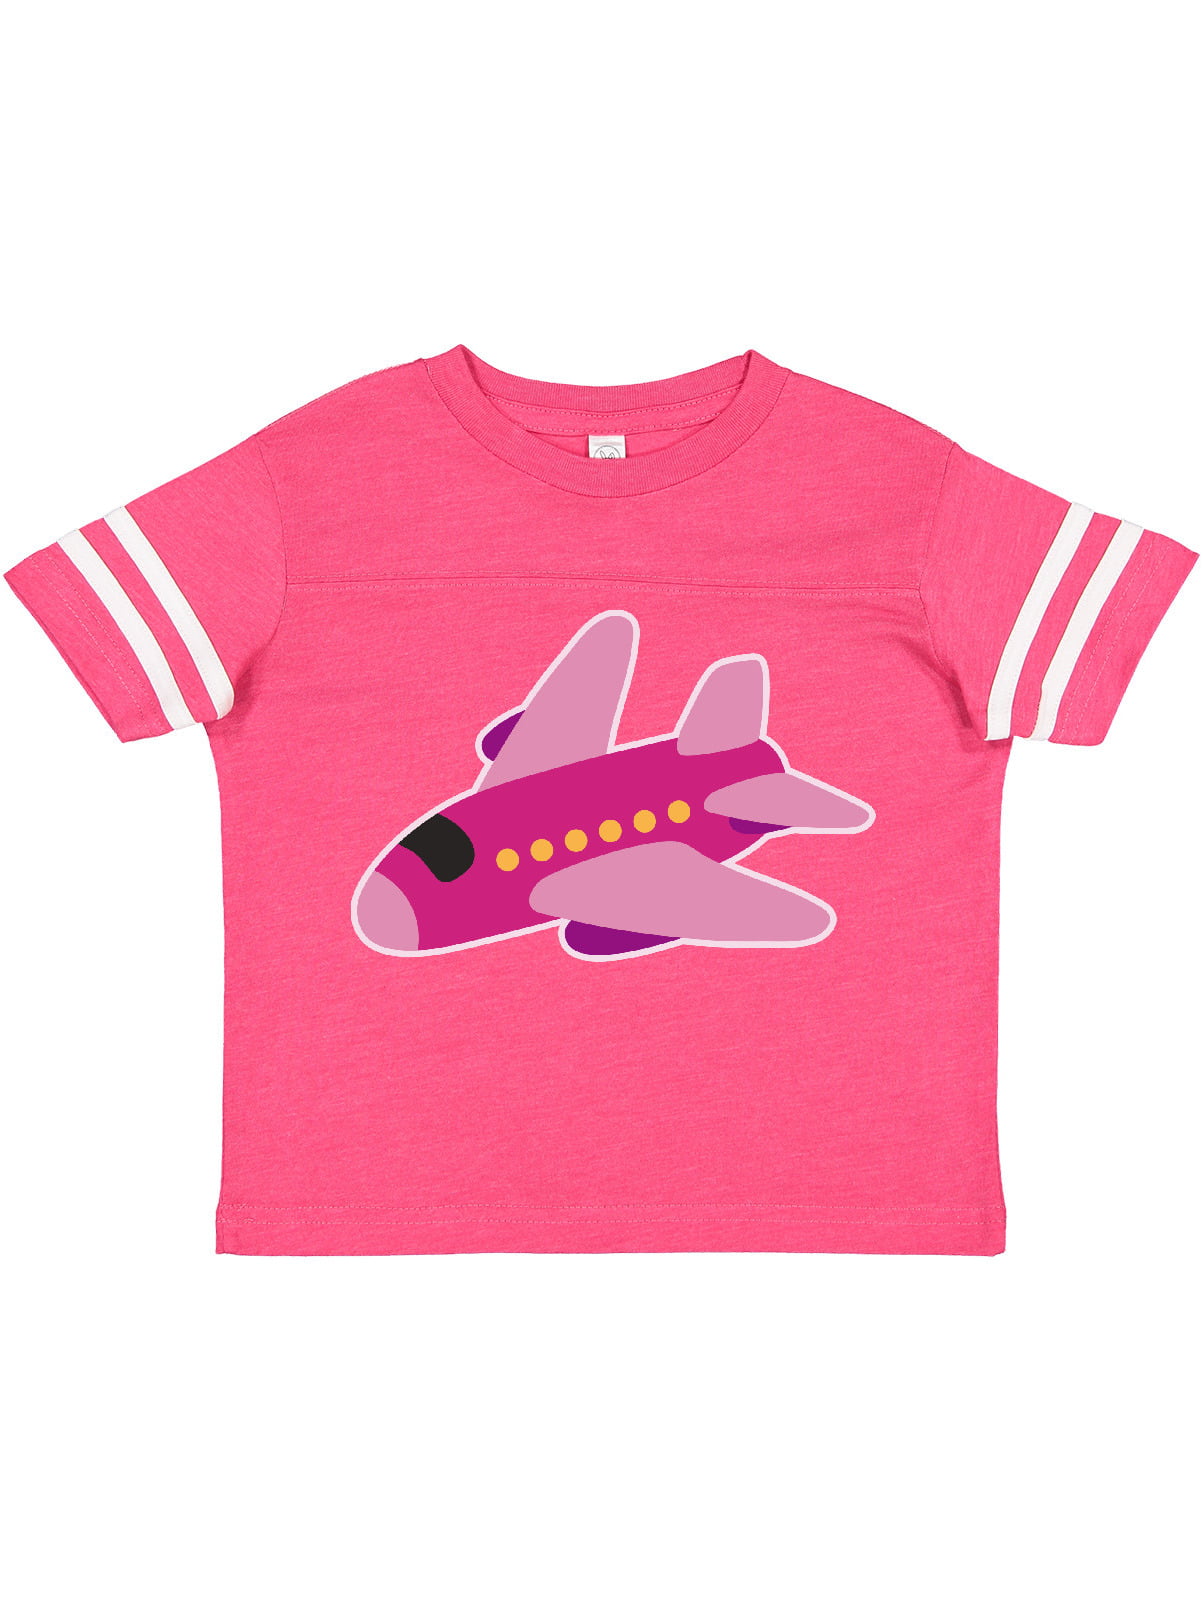 inktastic Girls Pink Airplane Pilot Toddler T-Shirt 